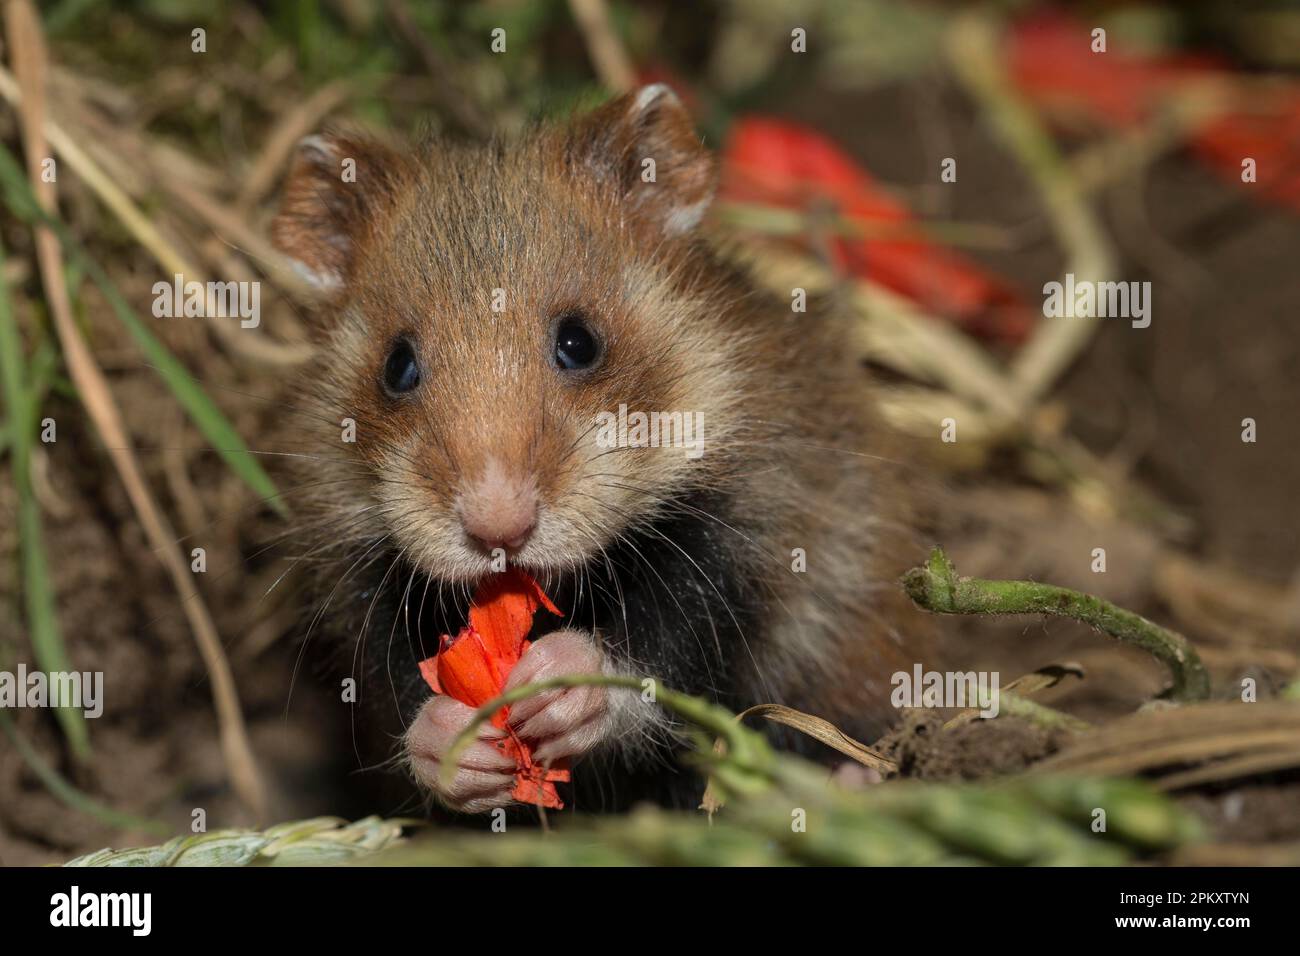 Hamster européen (Cricetus cricetus), juvénile, mangeant des pétales de pavot, Europe Banque D'Images